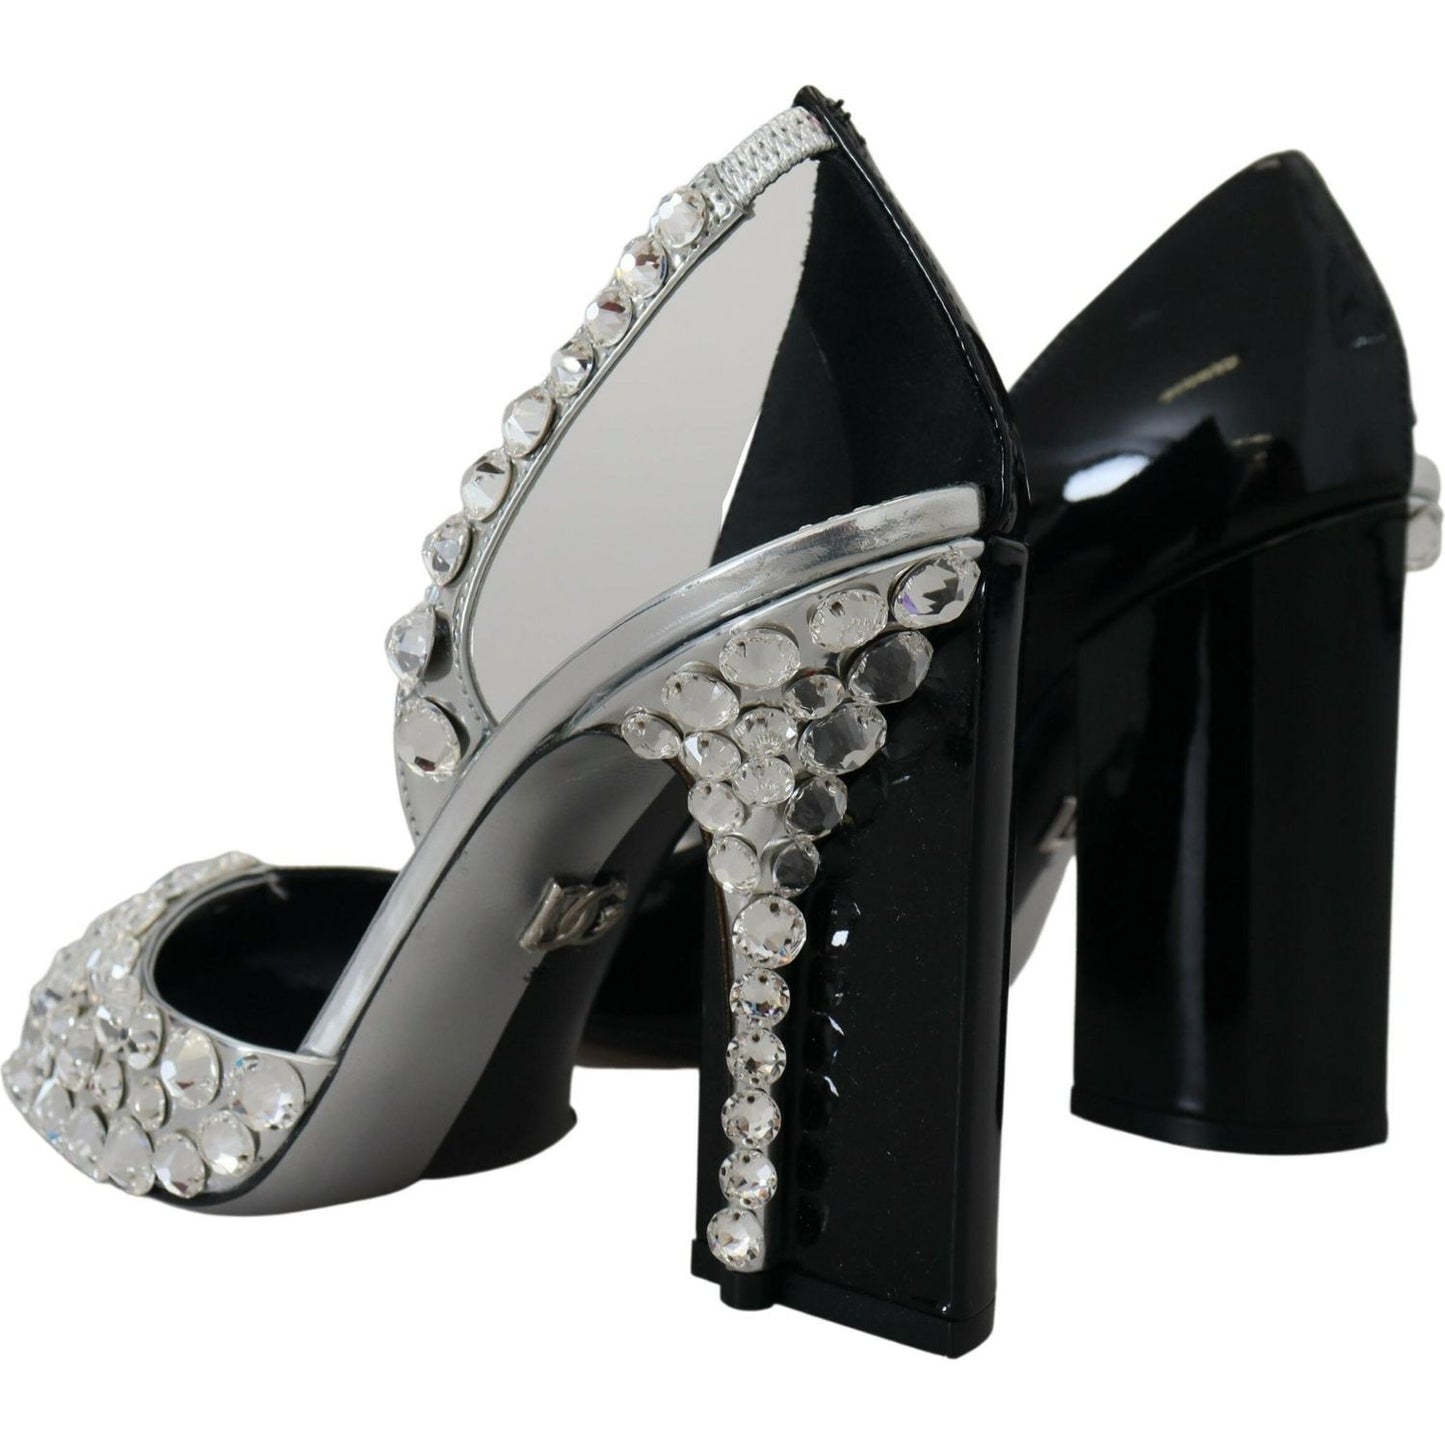 Dolce & Gabbana Elegant Crystals Embellished Leather Pumps black-silver-crystal-double-design-high-heels-shoes